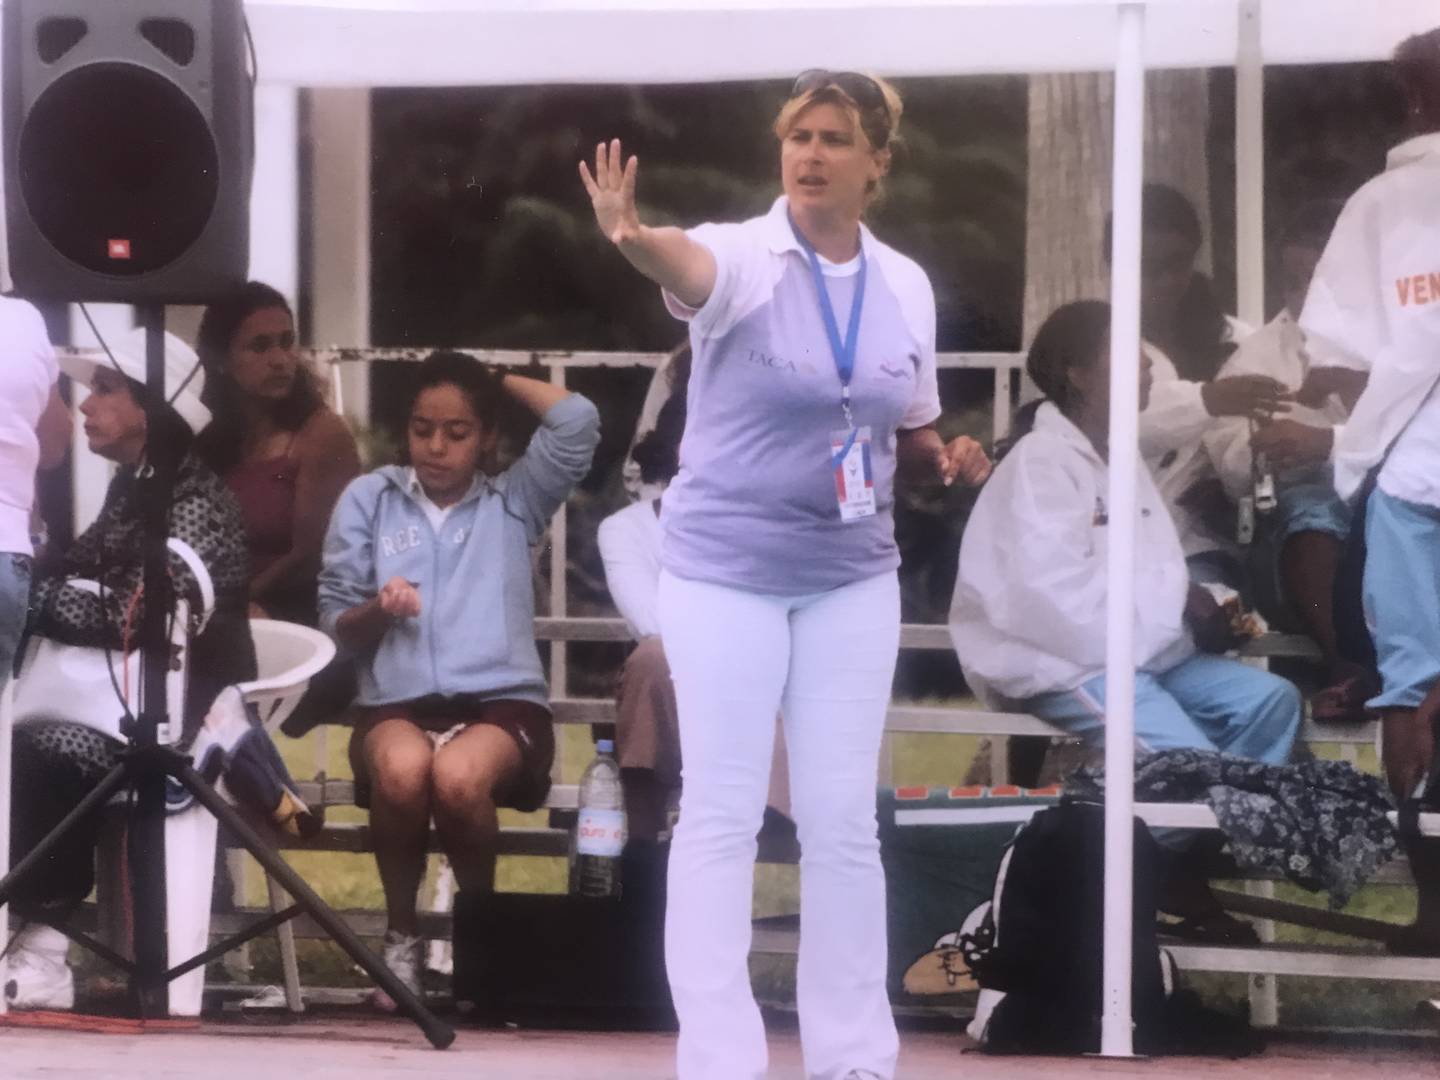 Olga Diakova era muy detallista y siempre estaba atenta para orientar a sus atletas y buscar la excelencia en las competencias. Su dedicación fue total desde que llegó a Costa Rica en 1993.